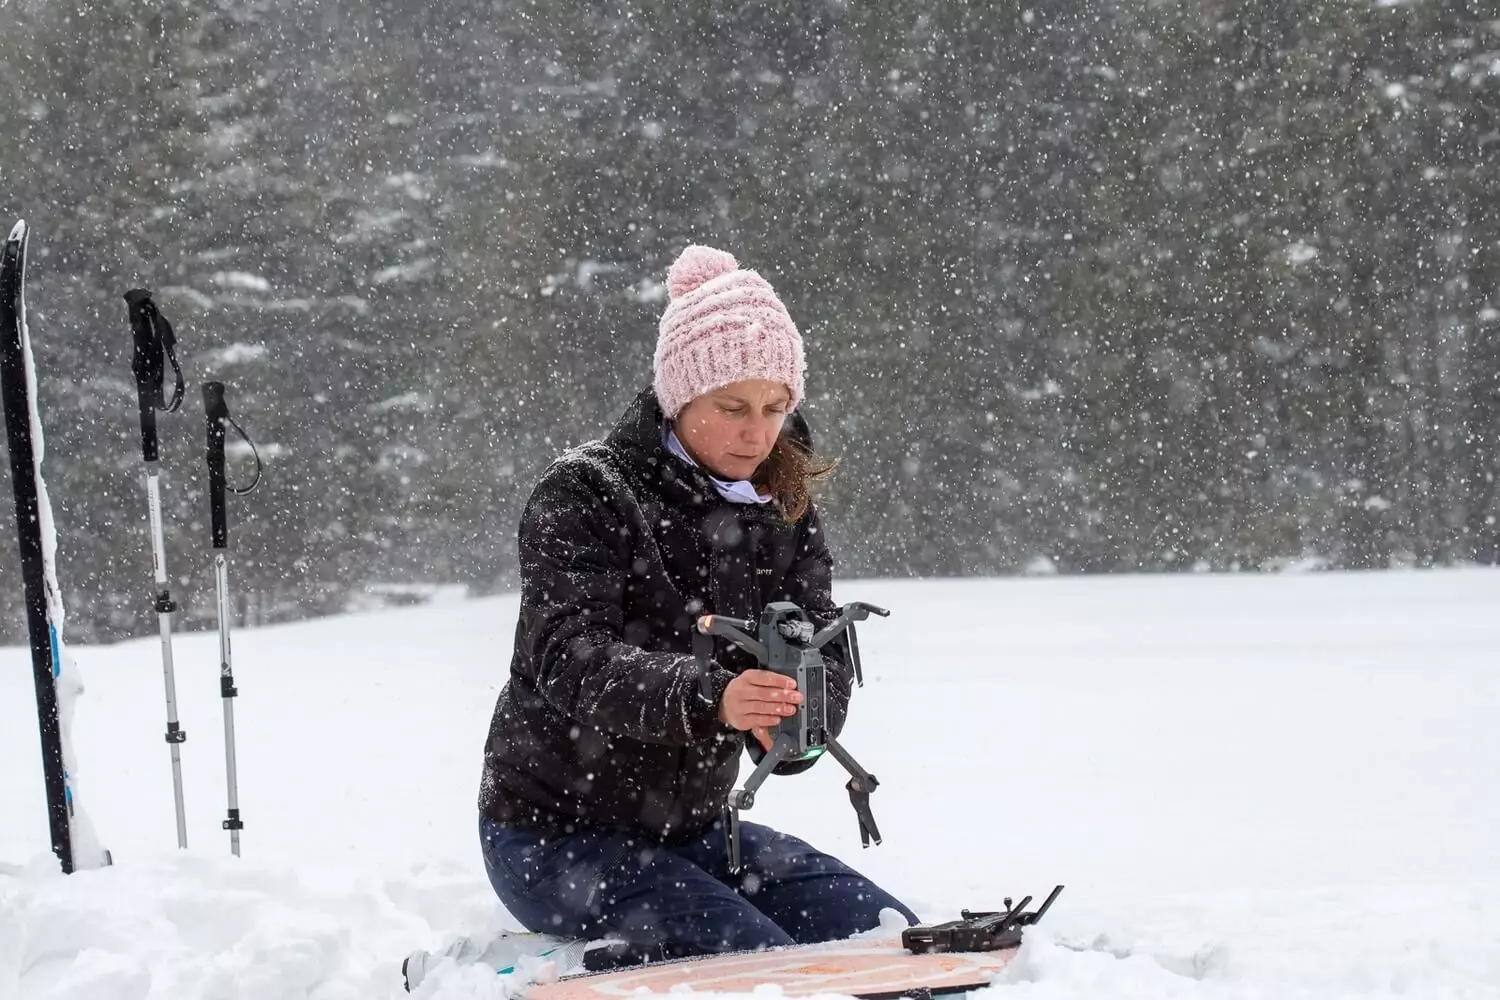 Sníh mapujeme také pomocí dronů. Pokud hustě sněží nebo fouká silný vítr, tak jsou ale jeho možnosti výrazně omezené.